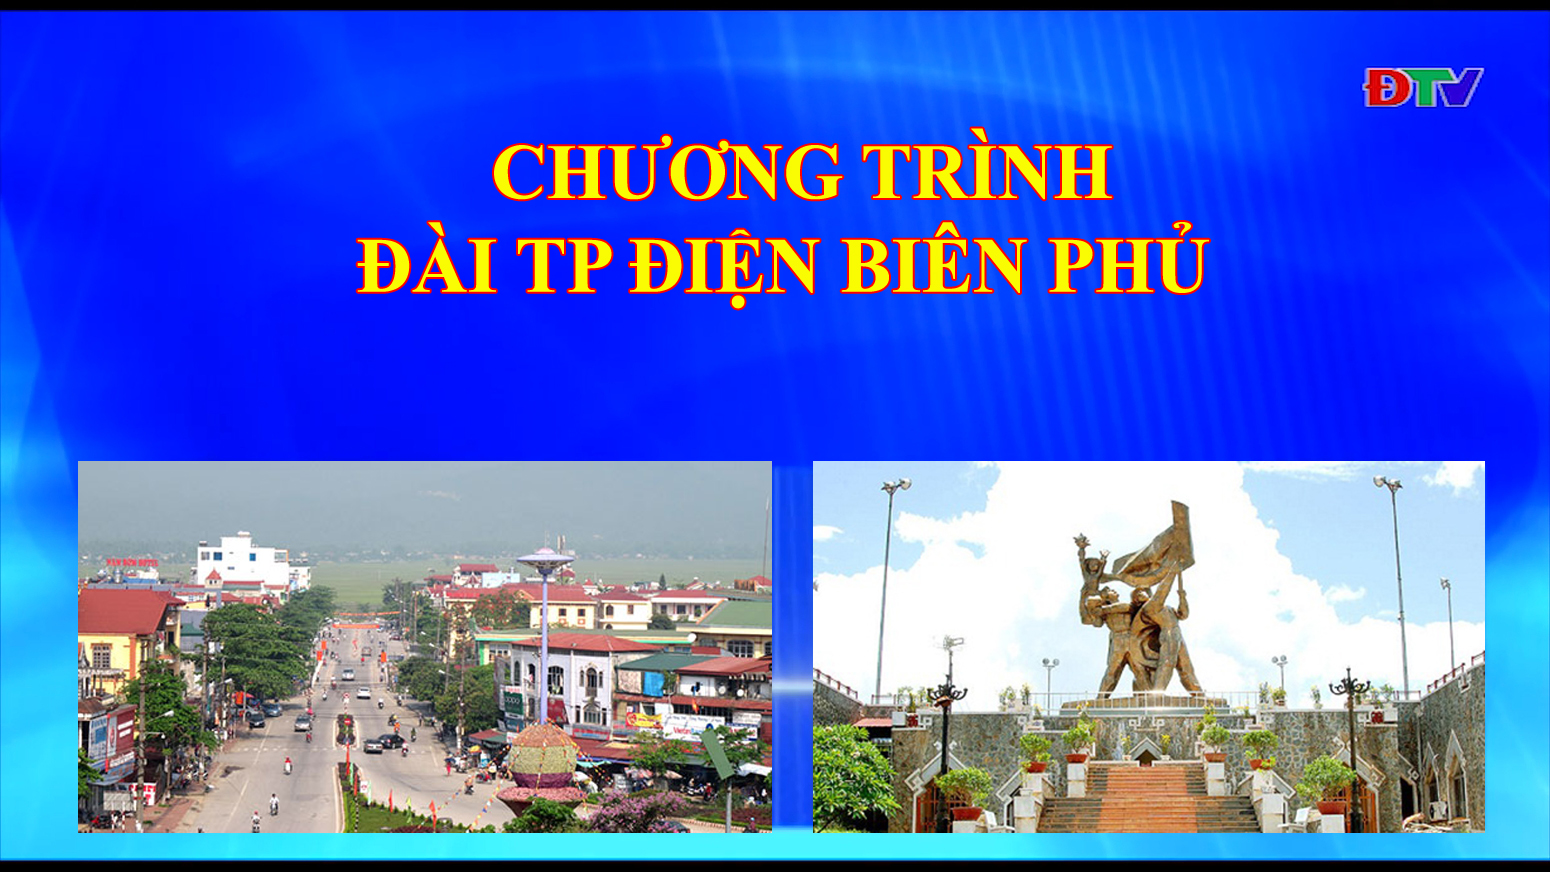 Đài thành phố Điện Biên Phủ (Ngày 03/03/2020)